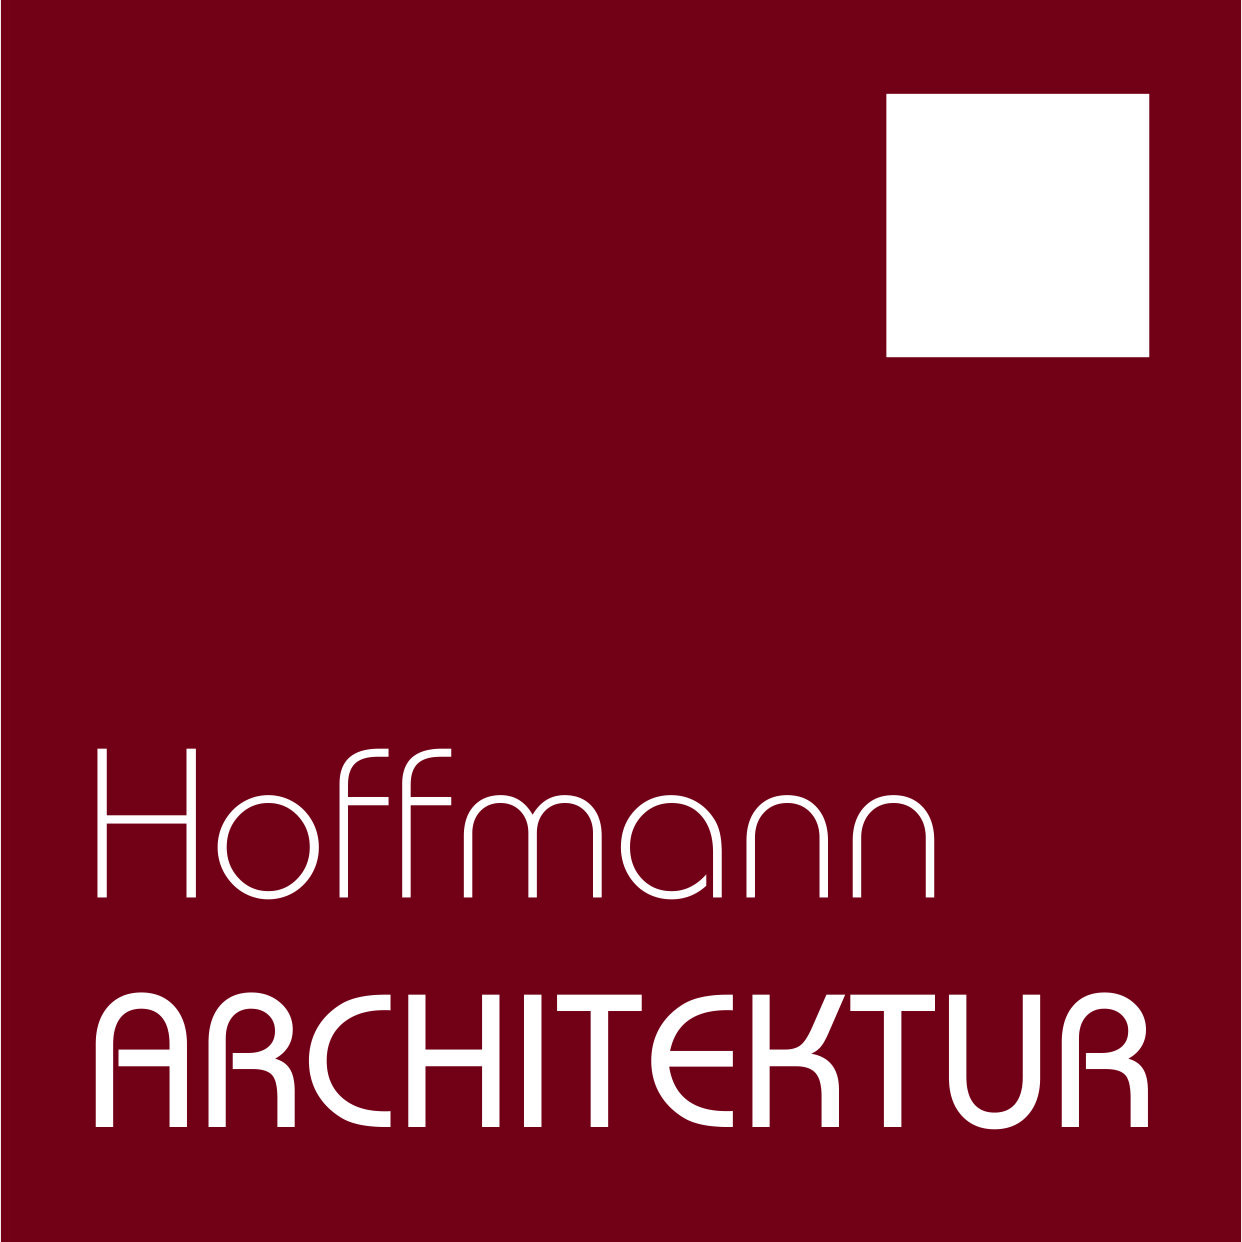 Hoffmann Architektur